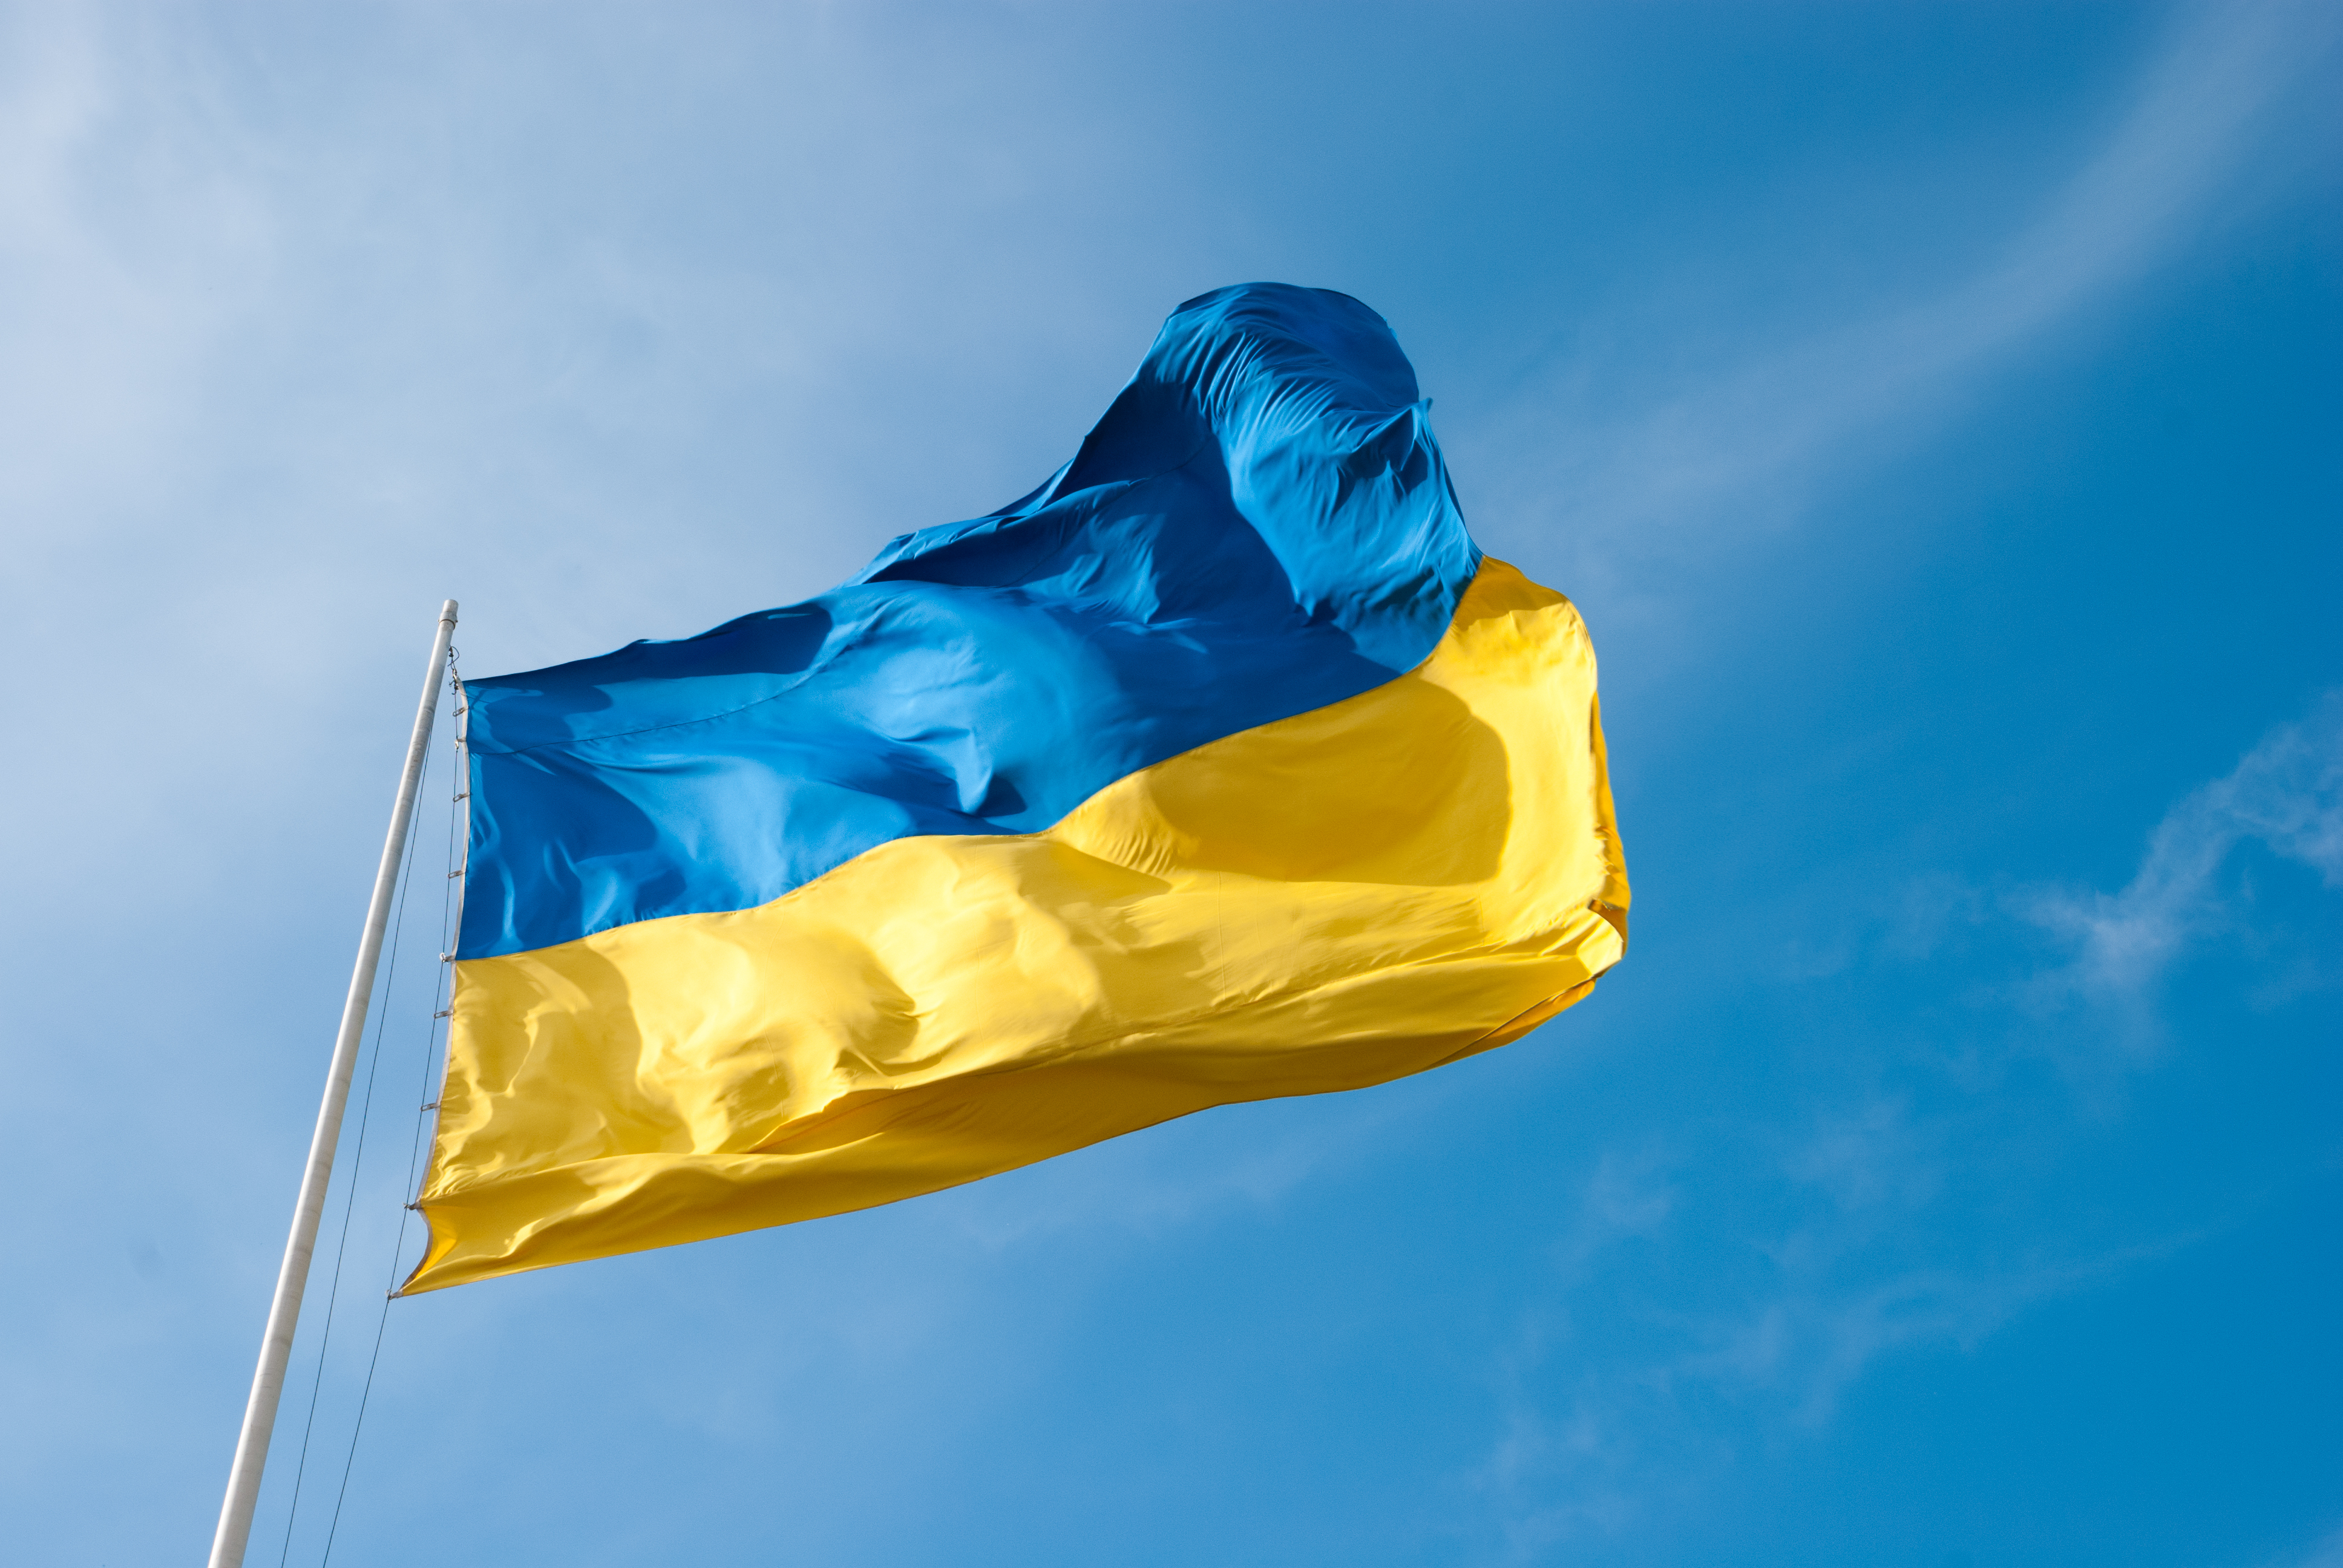 Rada Supremă adoptă Legea privind Înalta Curte Anticorupție. Premierul Groisman rămâne în fruntea Guvernului de la Kiev. Ucraina poate primi 17.5 miliarde de dolari